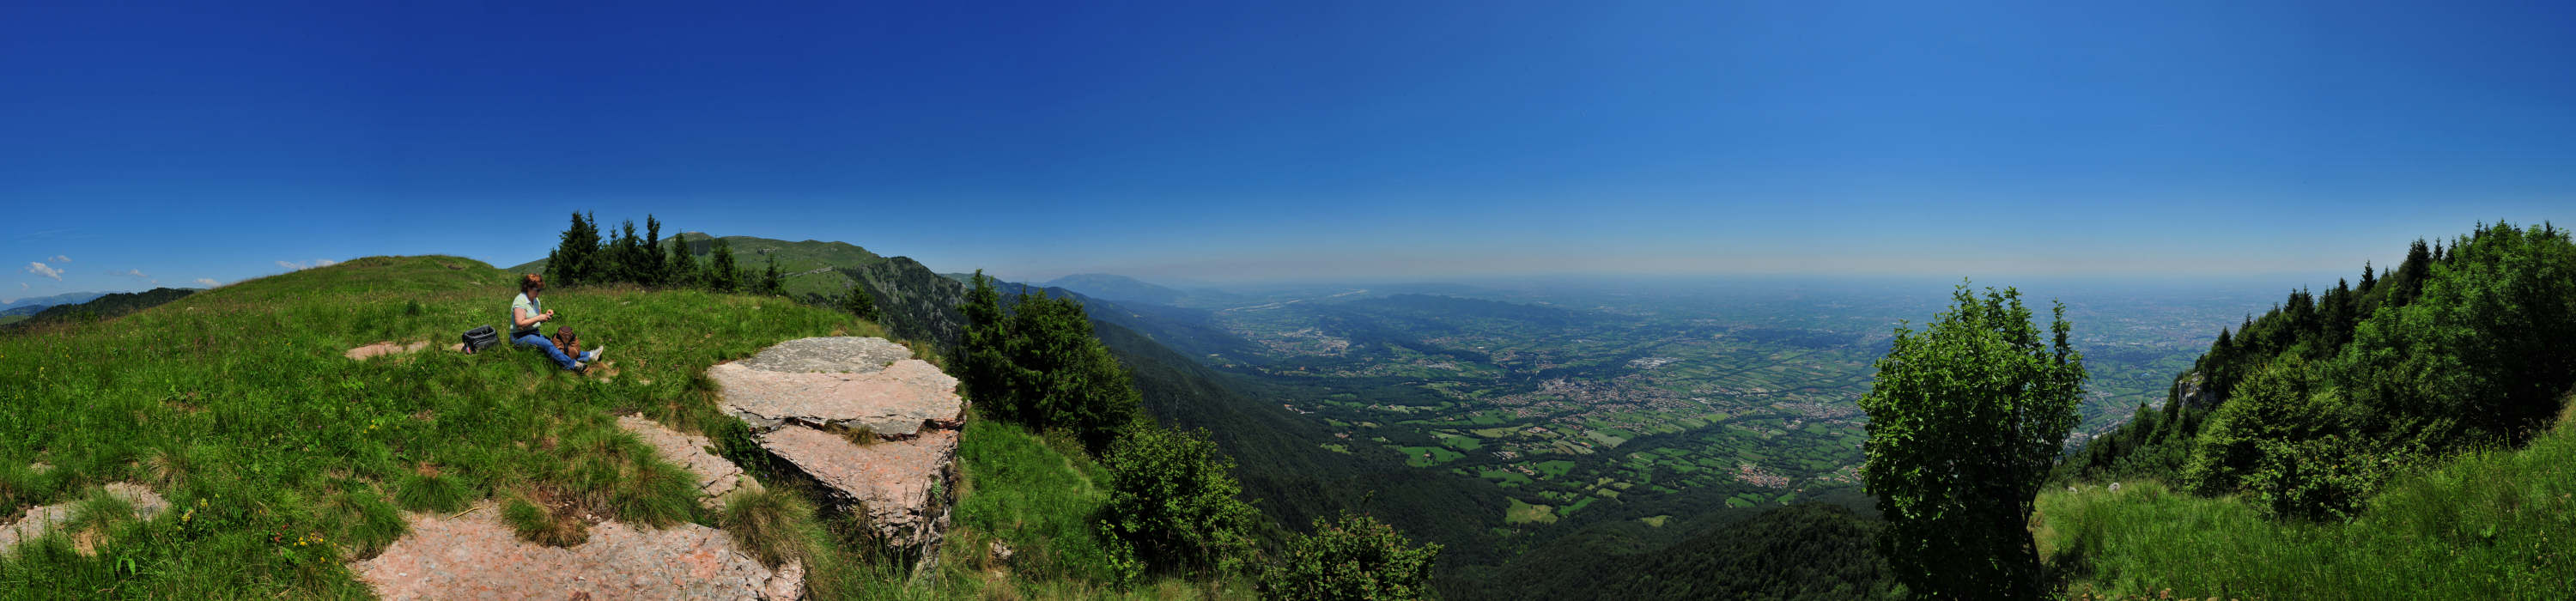 Monte Grappa, Legnarola Saline - fotografia panoramica